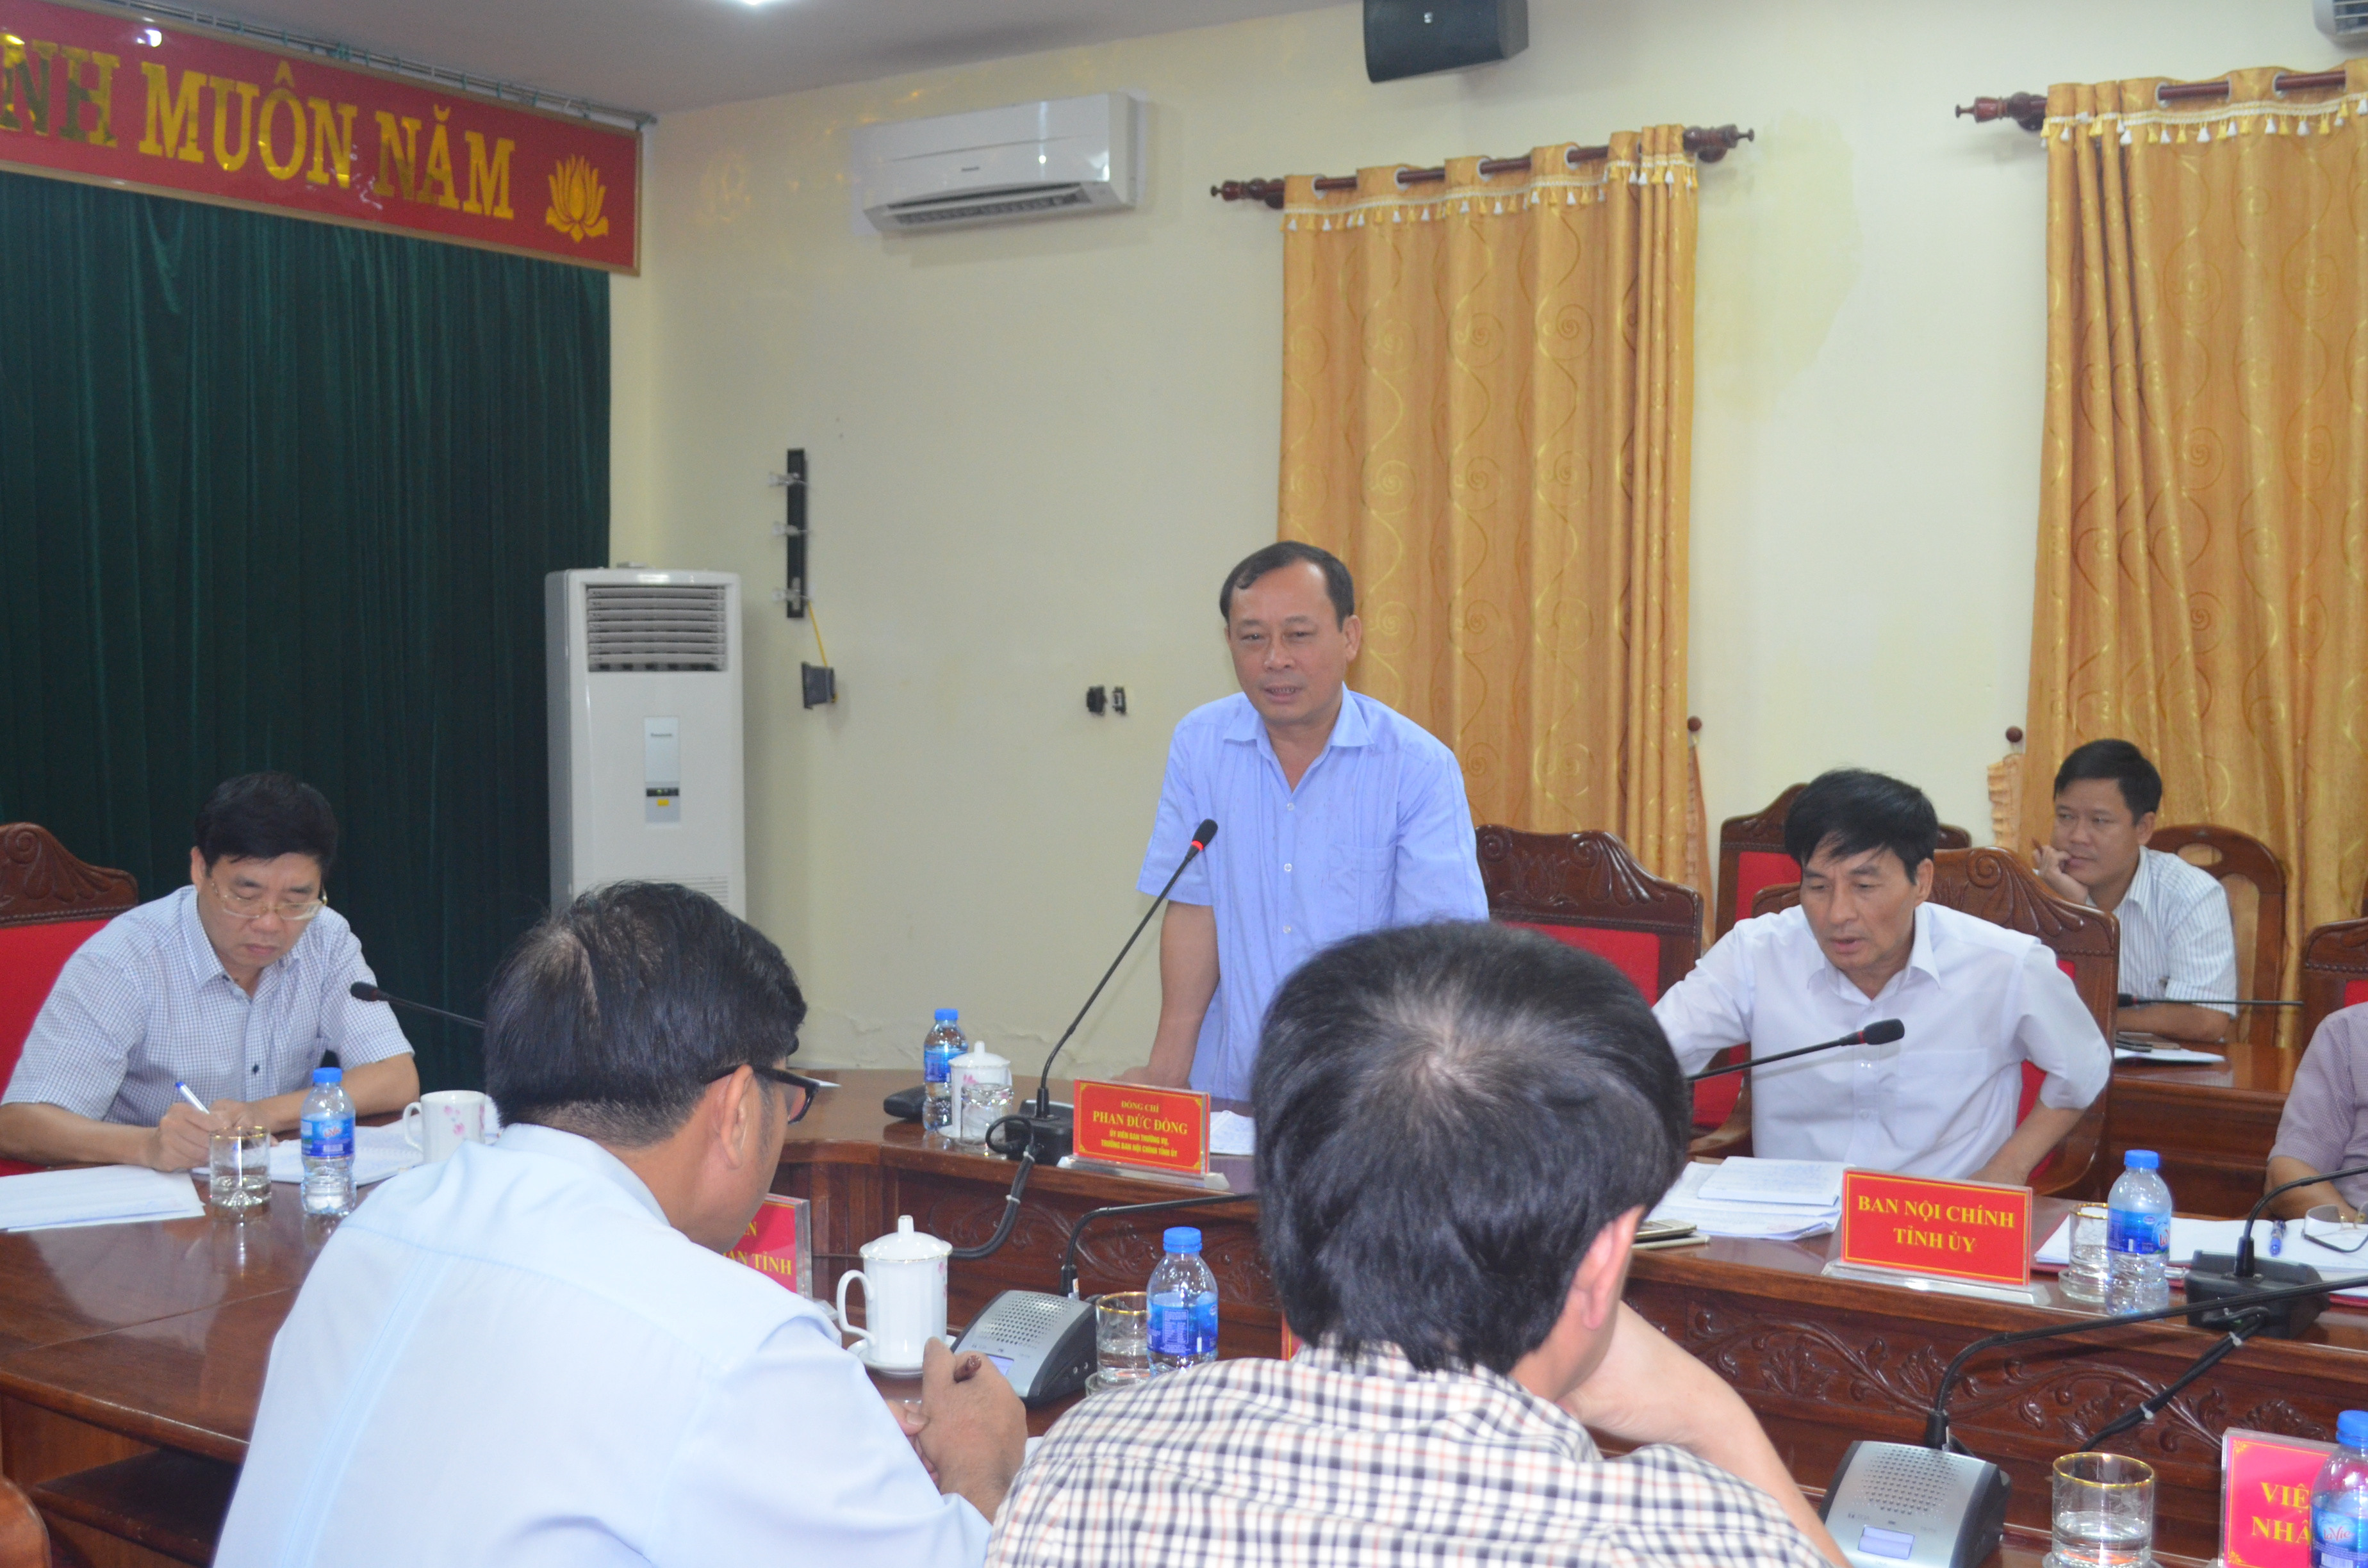 Trưởng ban Nội chính Tỉnh ủy Phan Đức Đồng chỉ ra những nguyên nhân cơ bản dẫn đến những vi phạm pháp luật trong khai thác, kinh doanh cát sỏi chậm được xử lý triệt để. Ảnh: Nhật Lân.